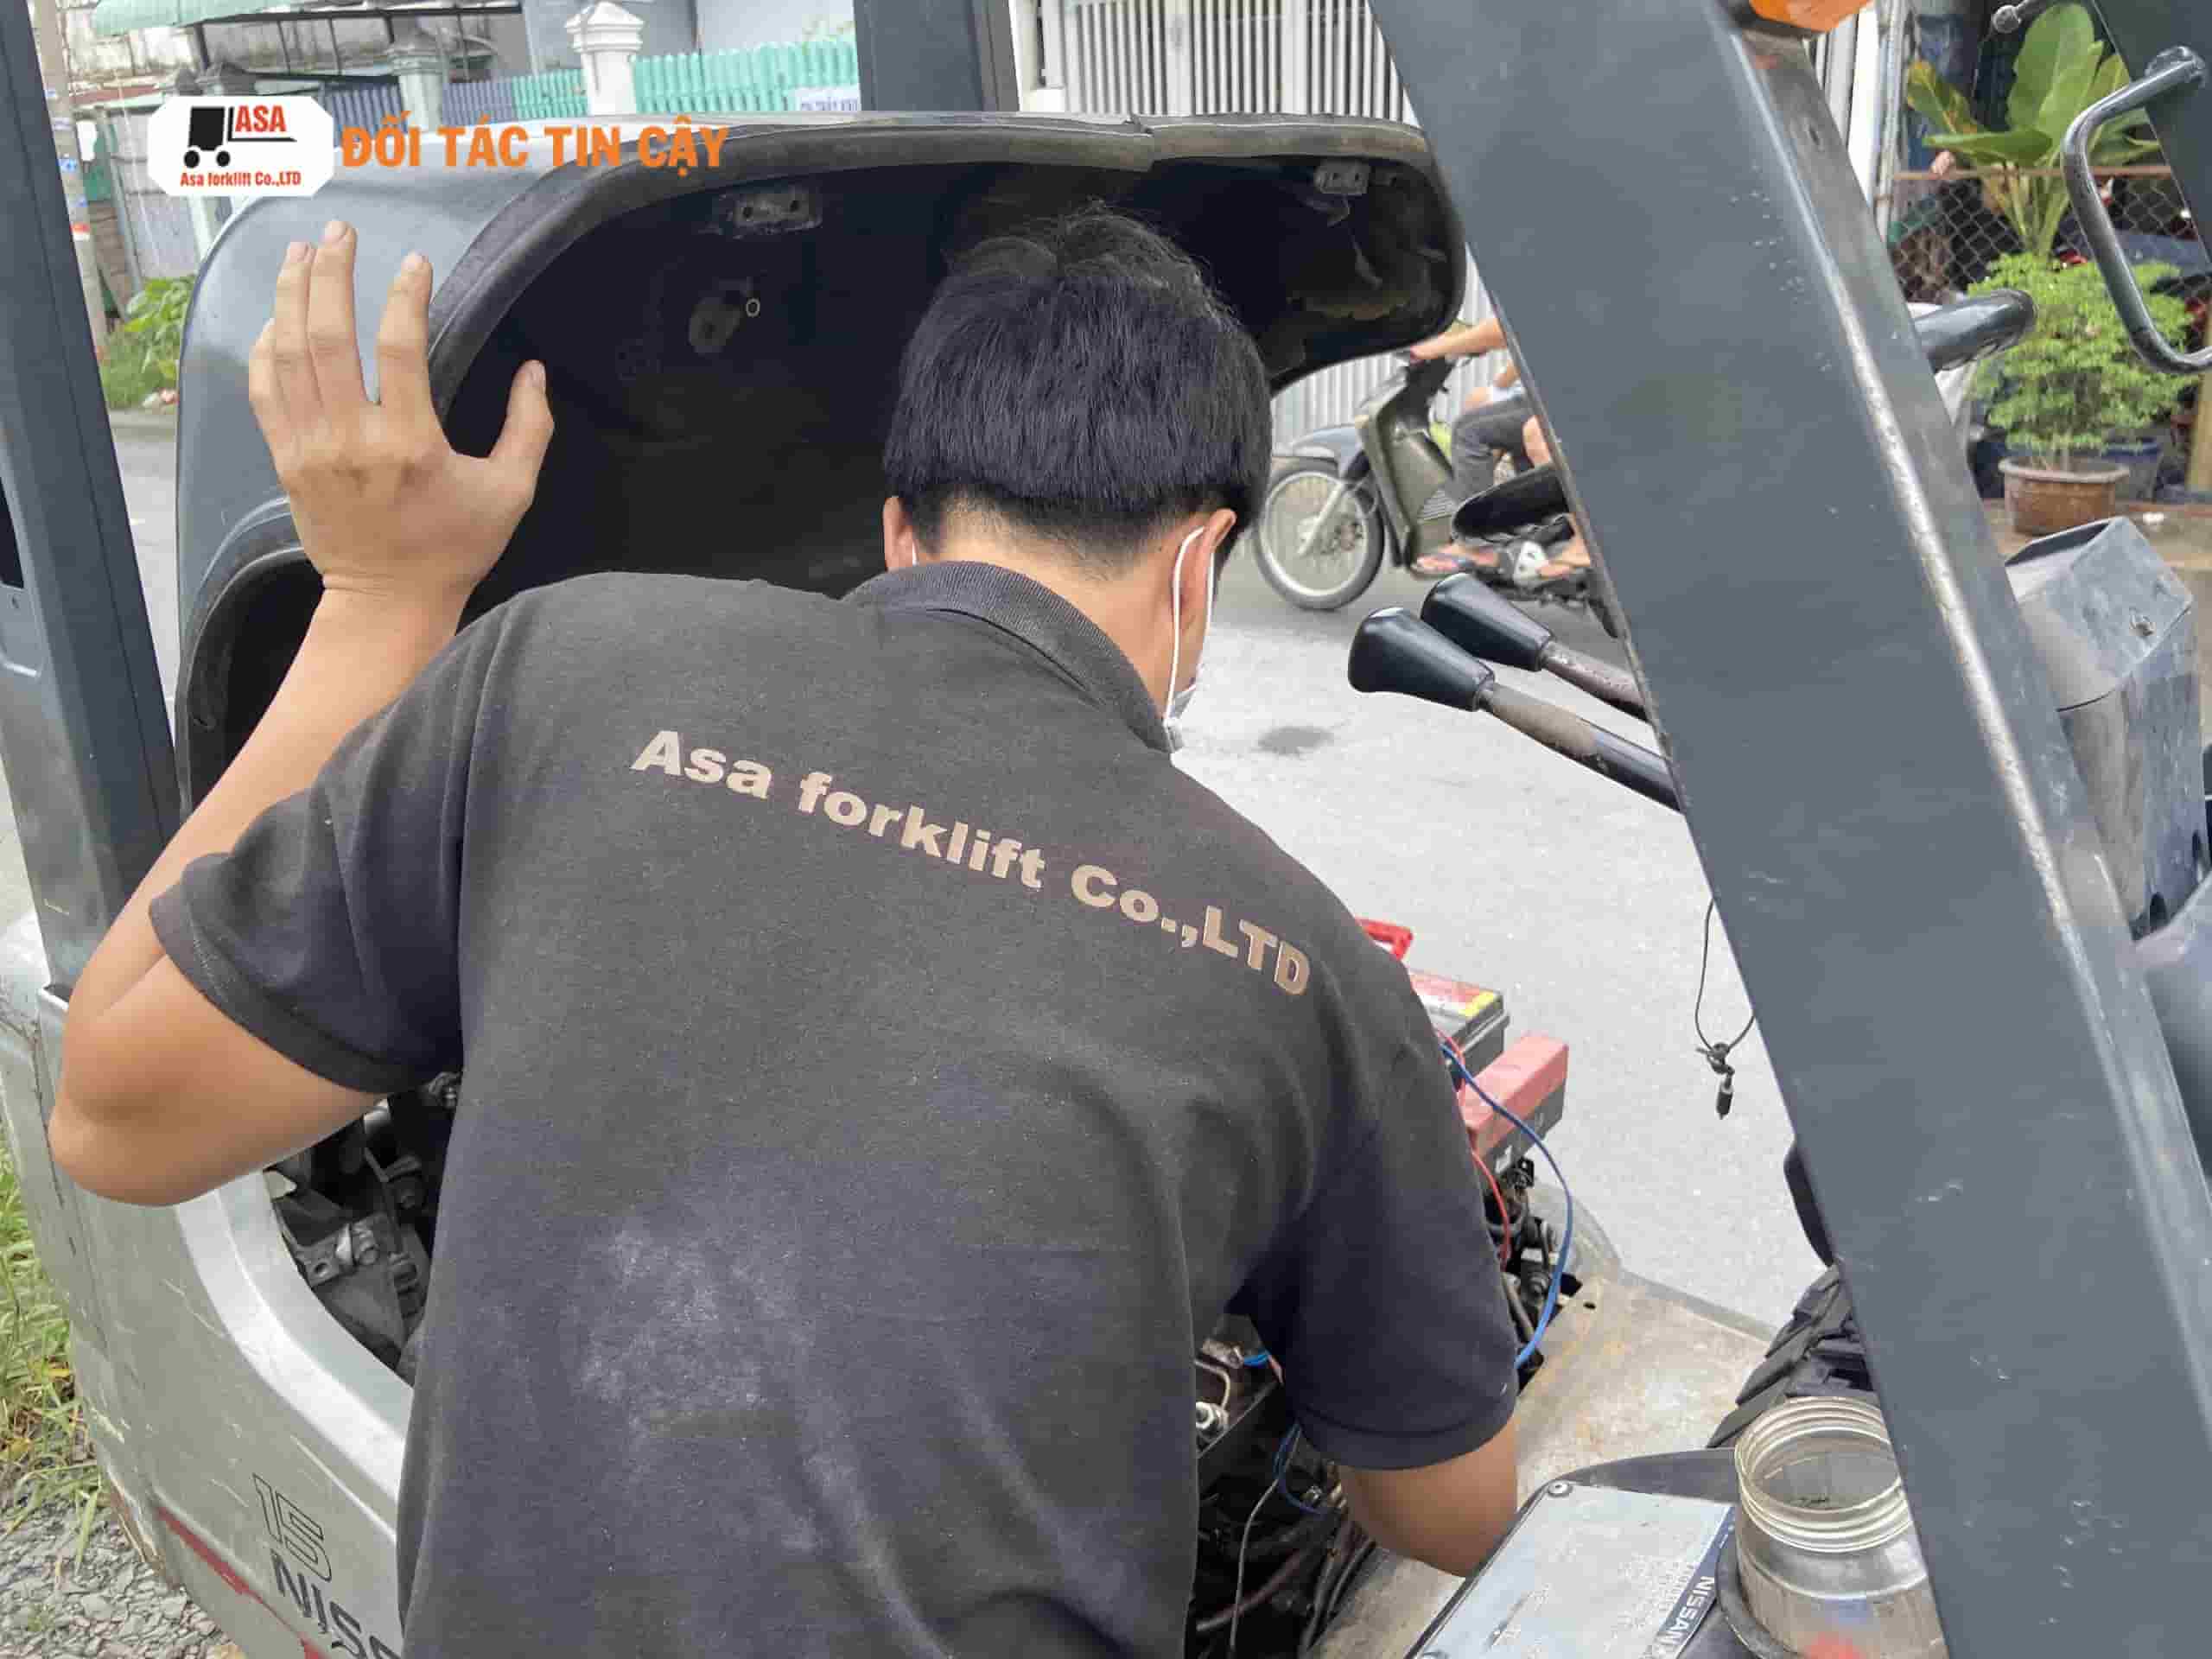 Sửa chữa xe nâng tại Bình Dương hiện này là một dịch vụ được ưa chuộng trong các KCN Bình Dương